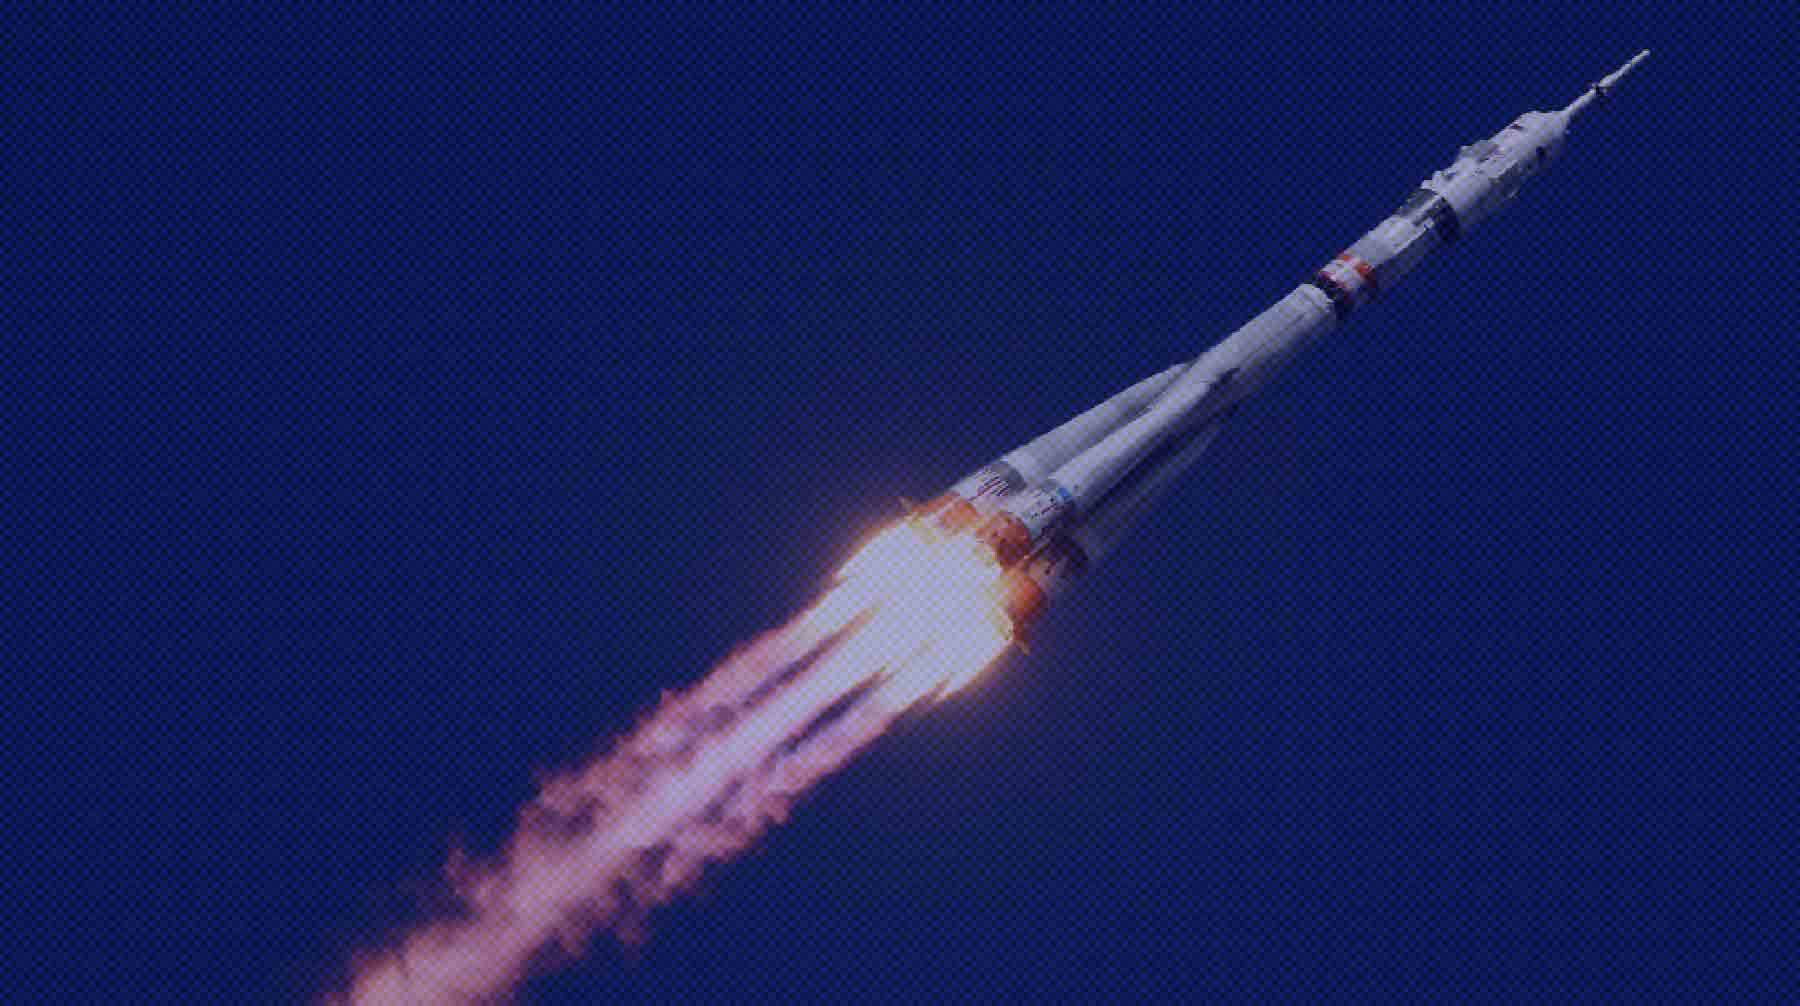 Dailystorm - На космодроме Байконур состоялся запуск корабля «Союз МС-19» с актрисой Пересильд на борту